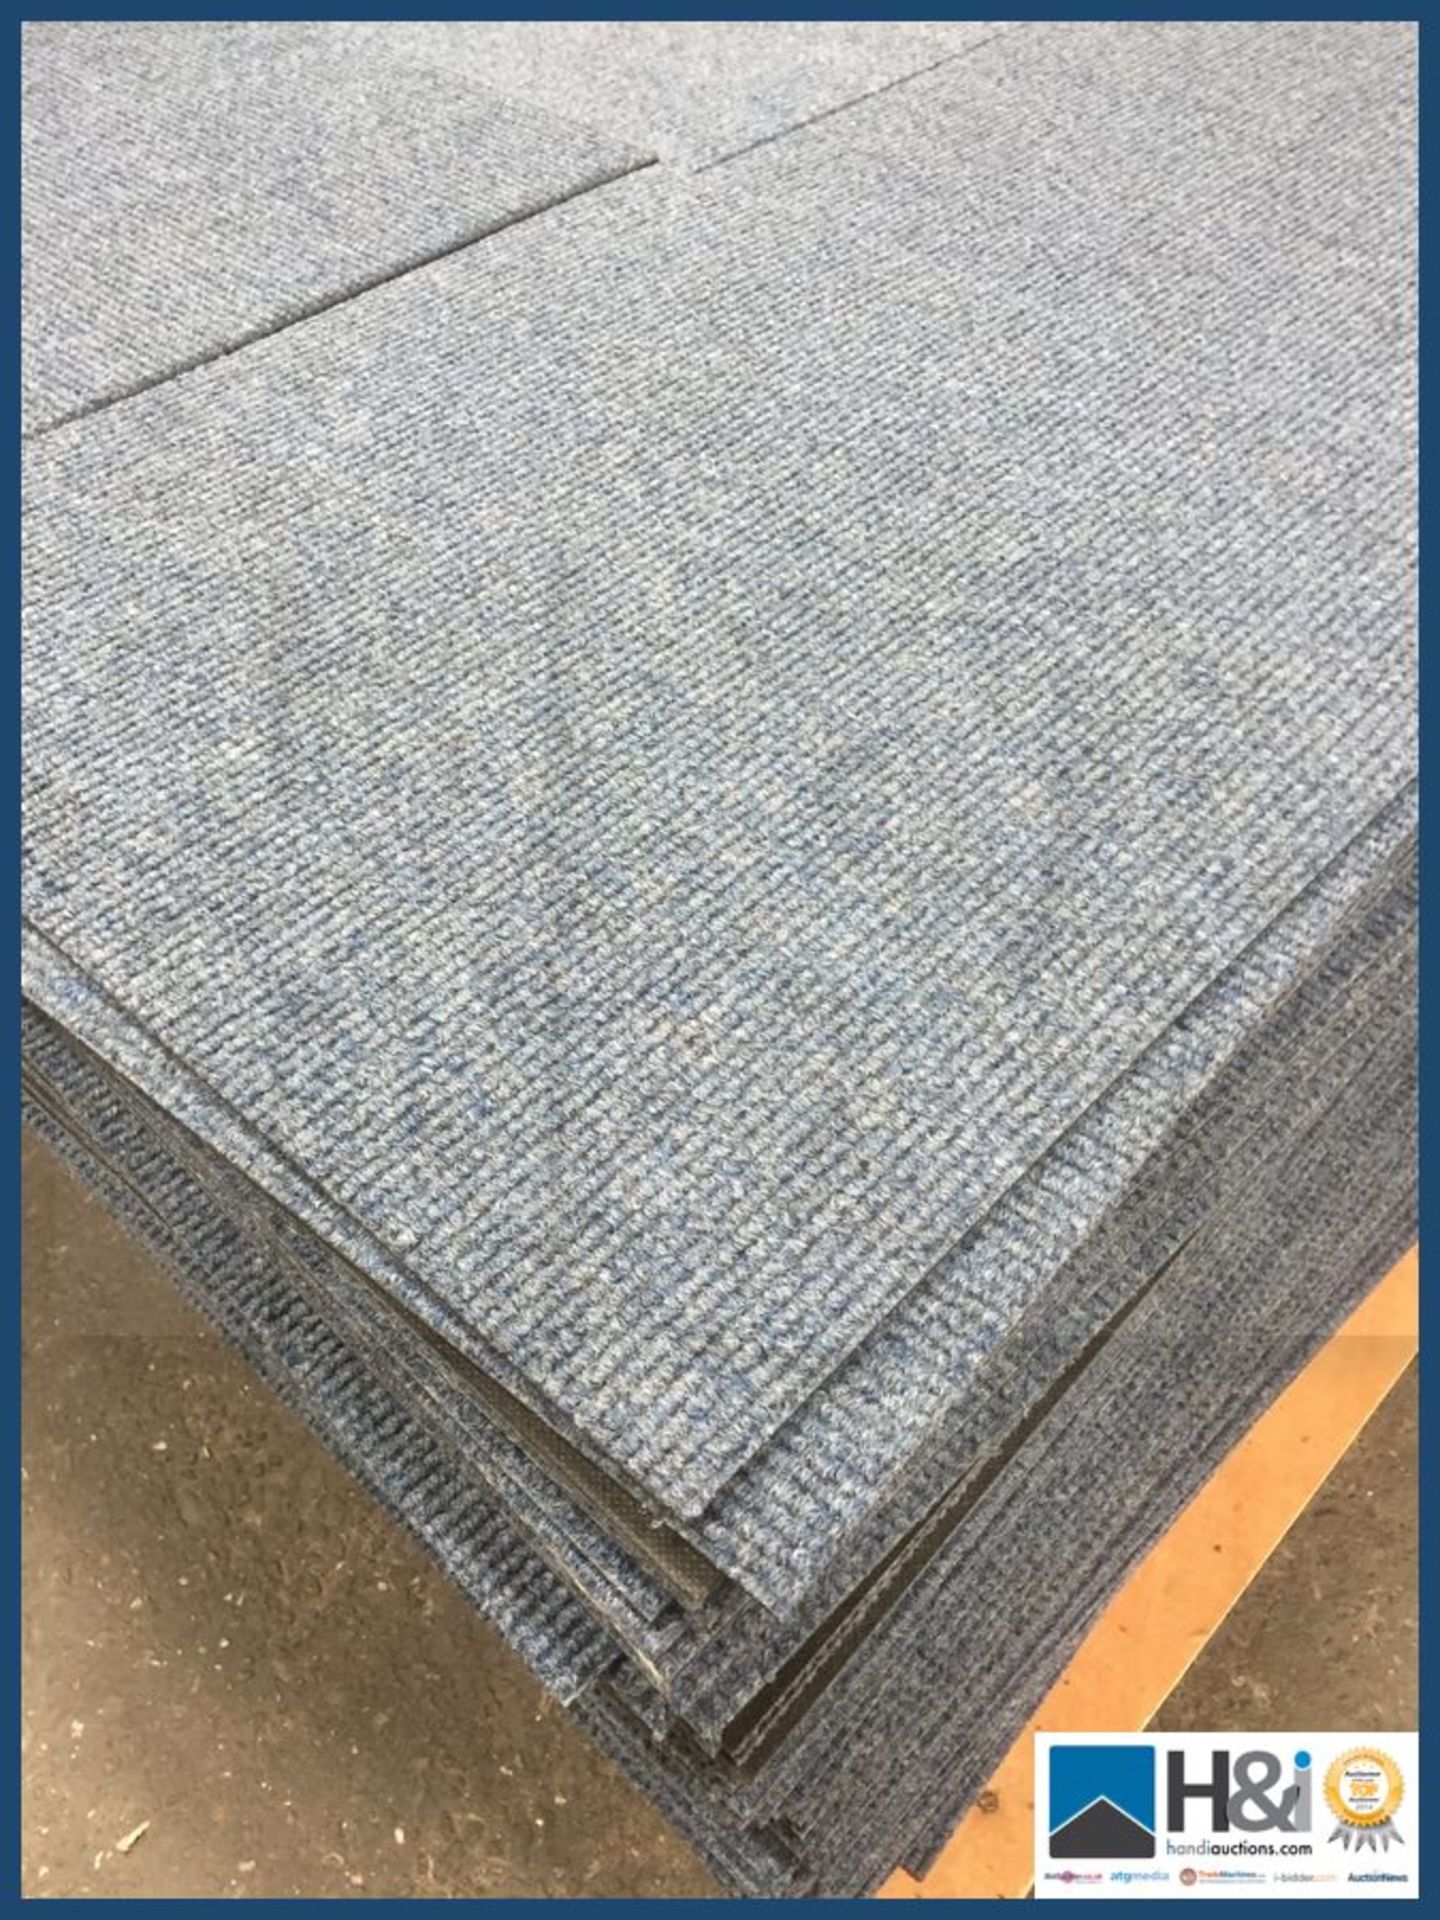 Burmatex contract carpet tiles. Design:Academy. Colour:Oriel Blue. 100 tiles total 25m2 per lot. RRP